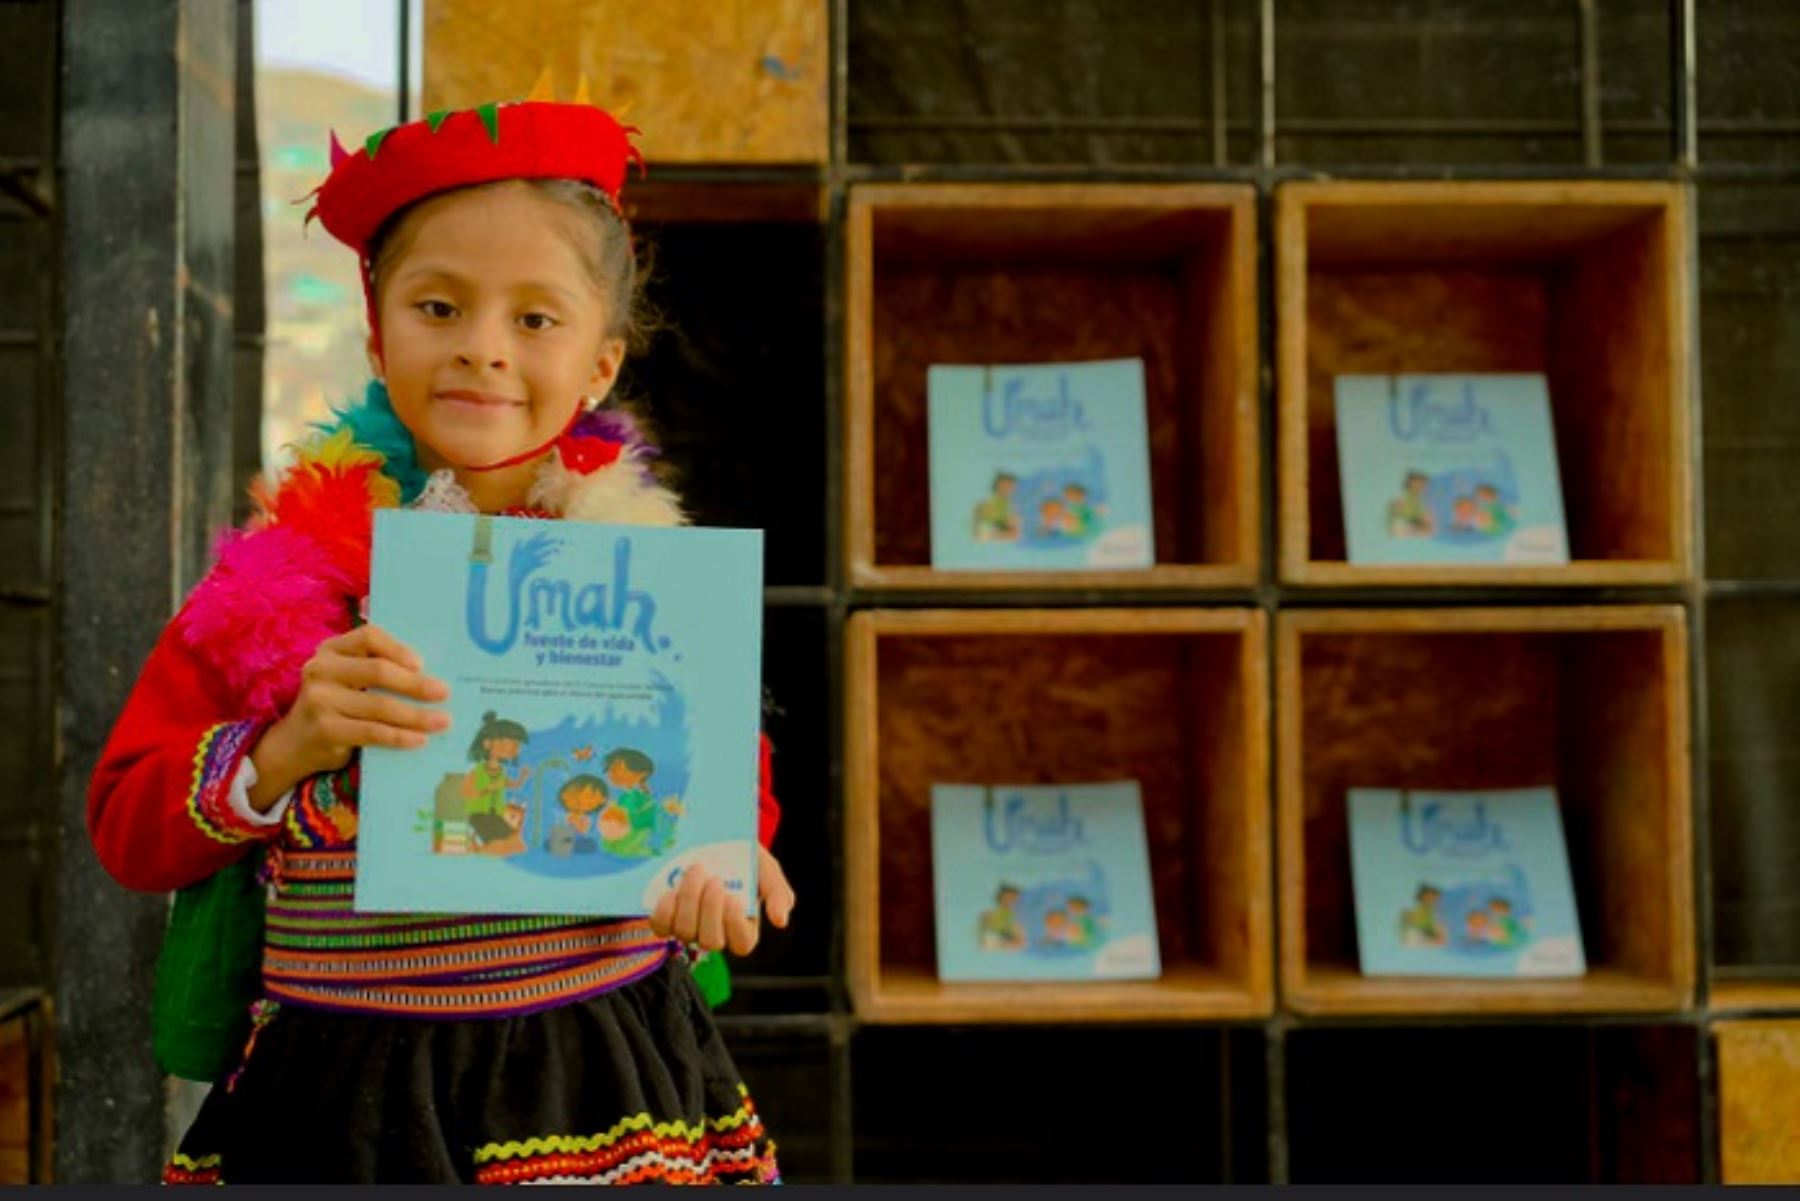 La Sunass presentó el libro “Umah: fuente de vida y bienestar” que recopila las creaciones de niñas, niños y adolescentes.